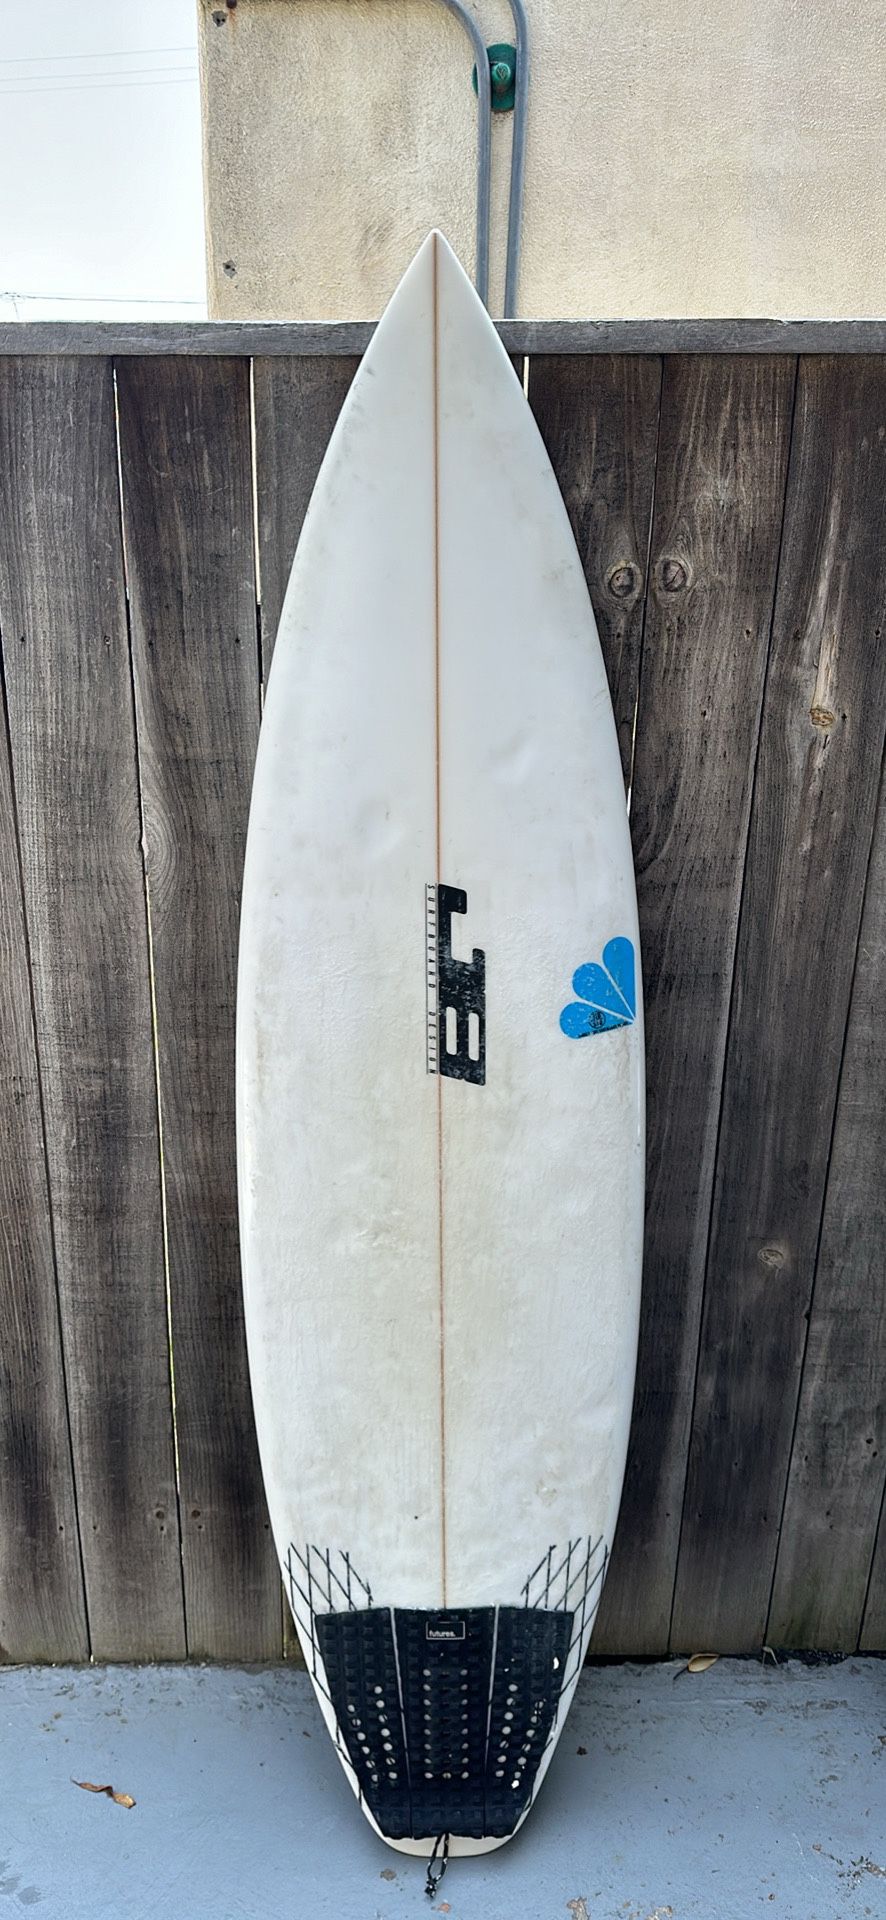 6’3” Surfboard - JB Surfboard Design - Apple model - 32.4L